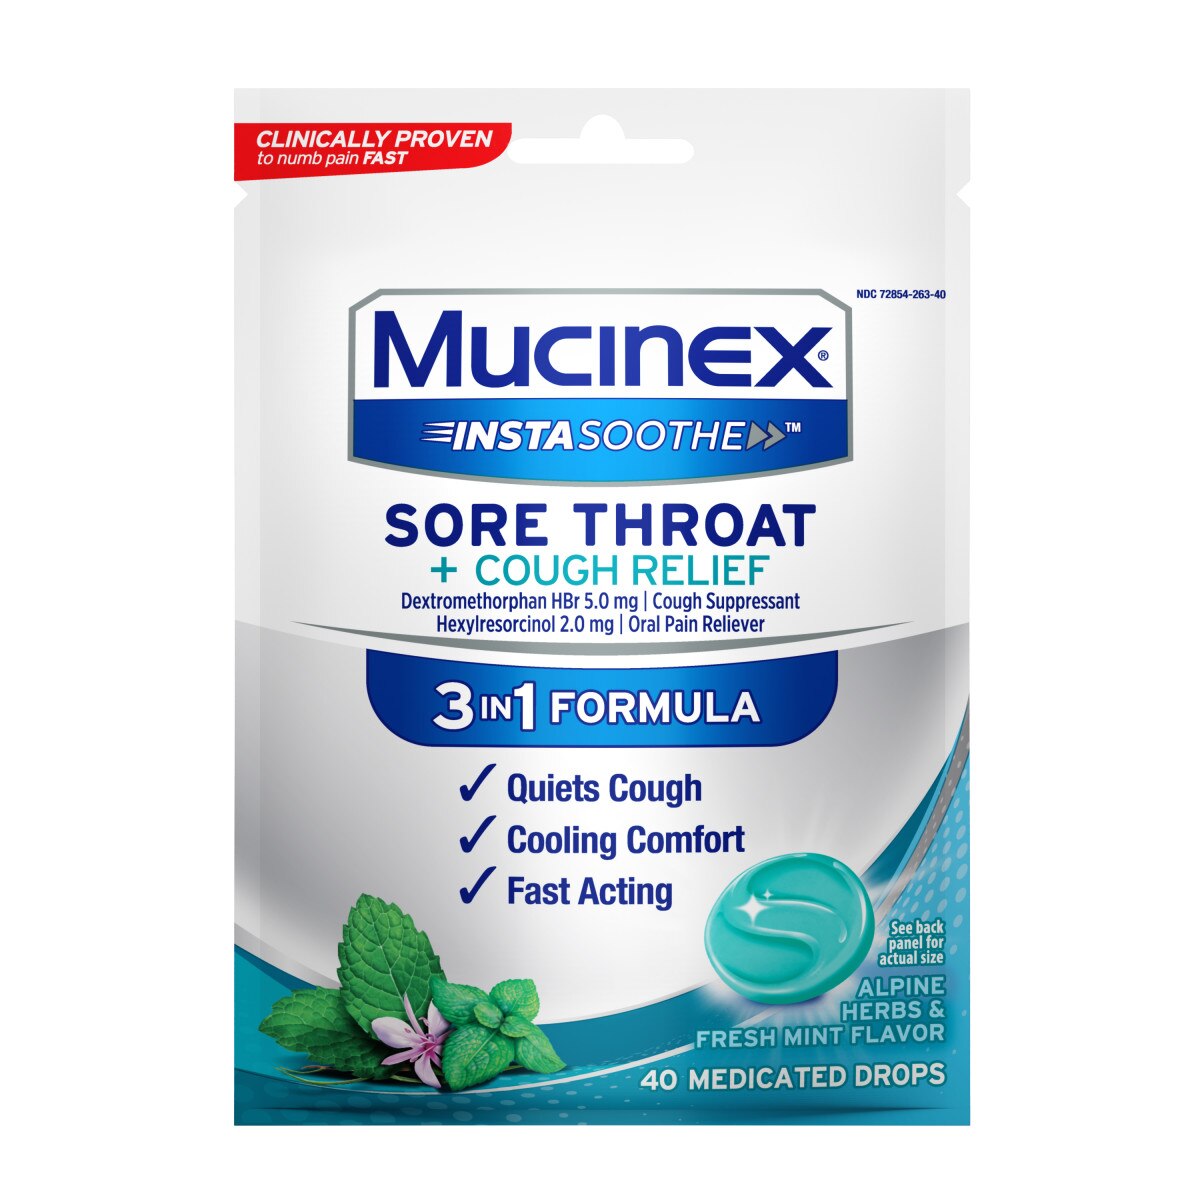 MUCINEX InstaSoothe - Alivio para la tos y dolor de garganta, Alpine Herbs & Fresh Mint, 40 u.